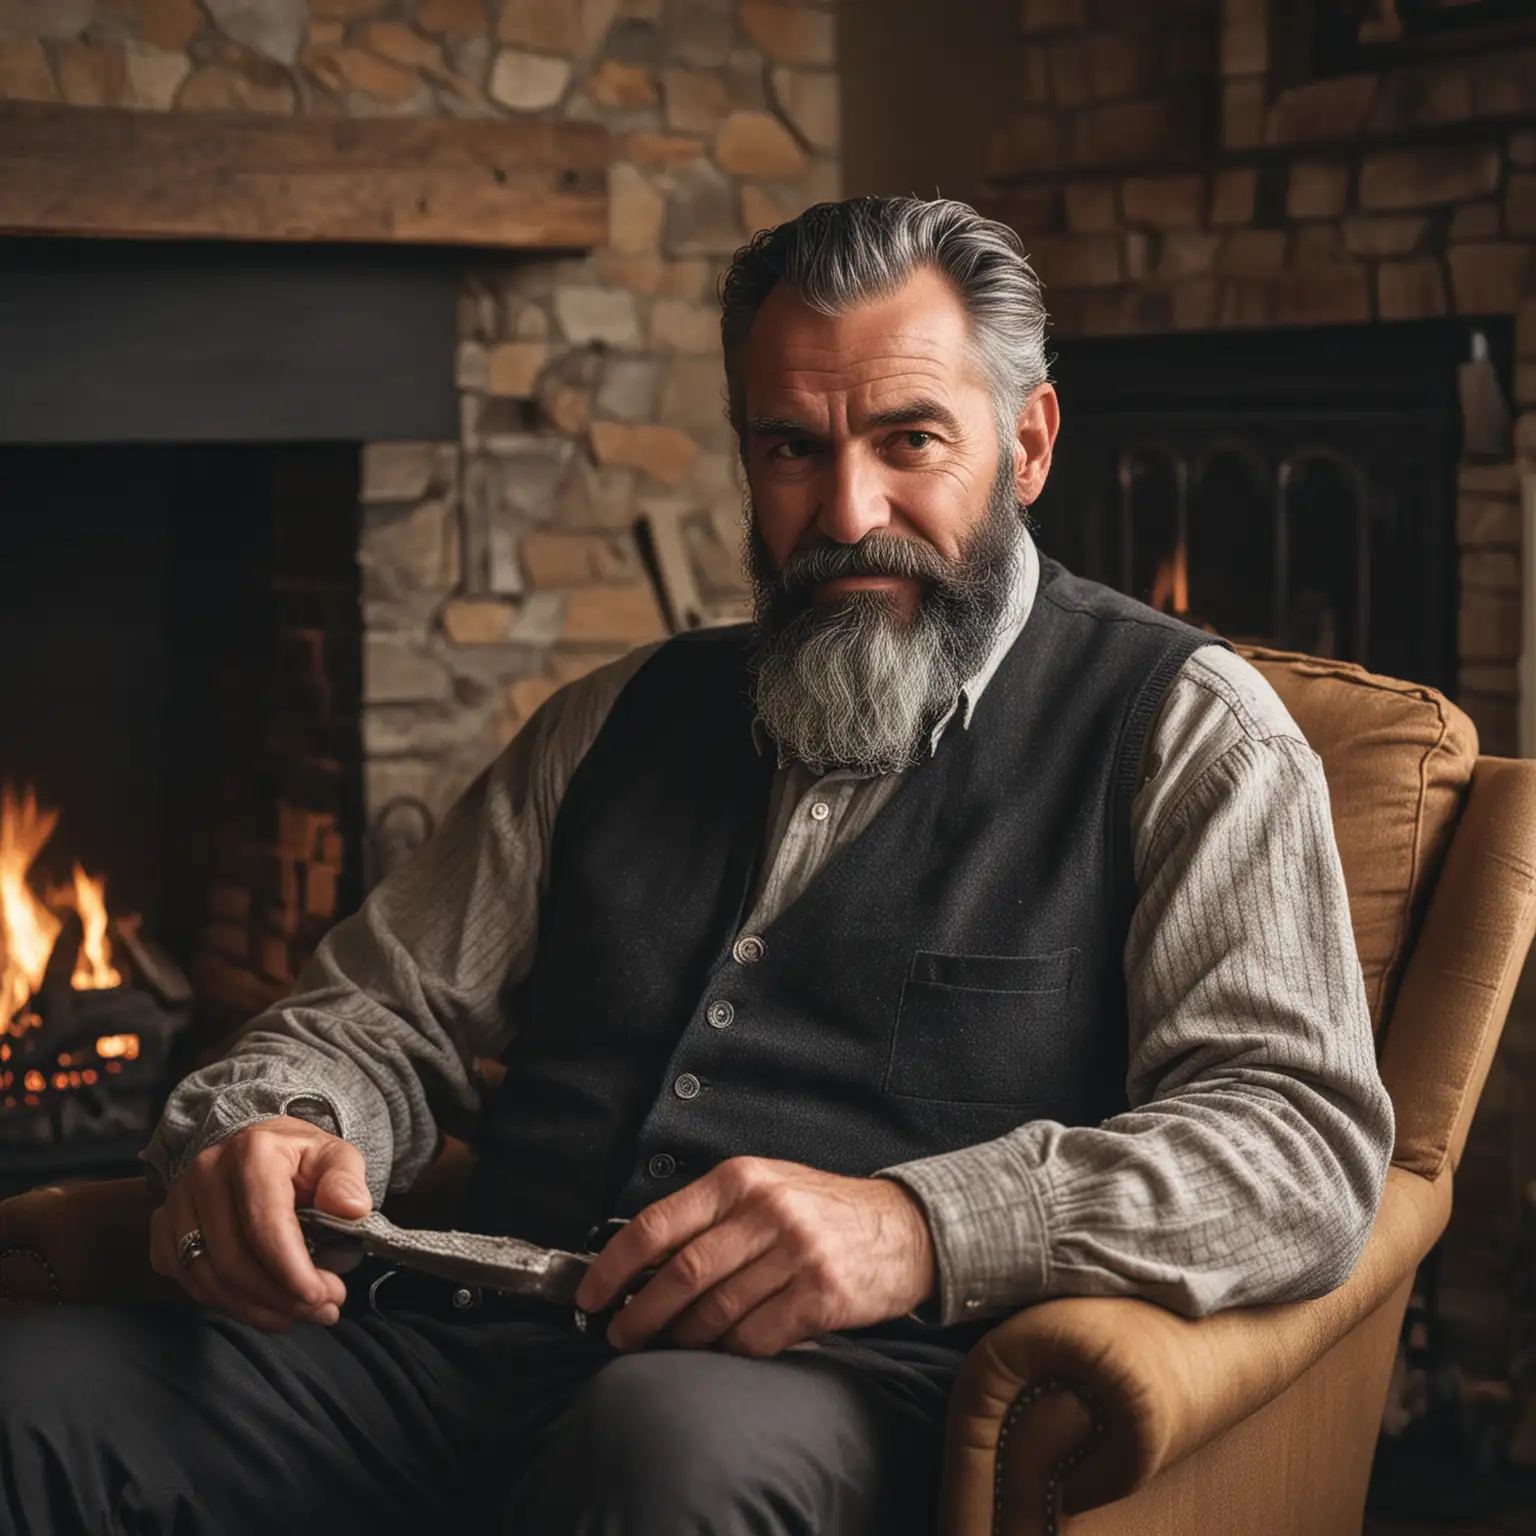 starszy Pan koło 50 lat z siwo czarną brodą buja się na fotelu przy kominku